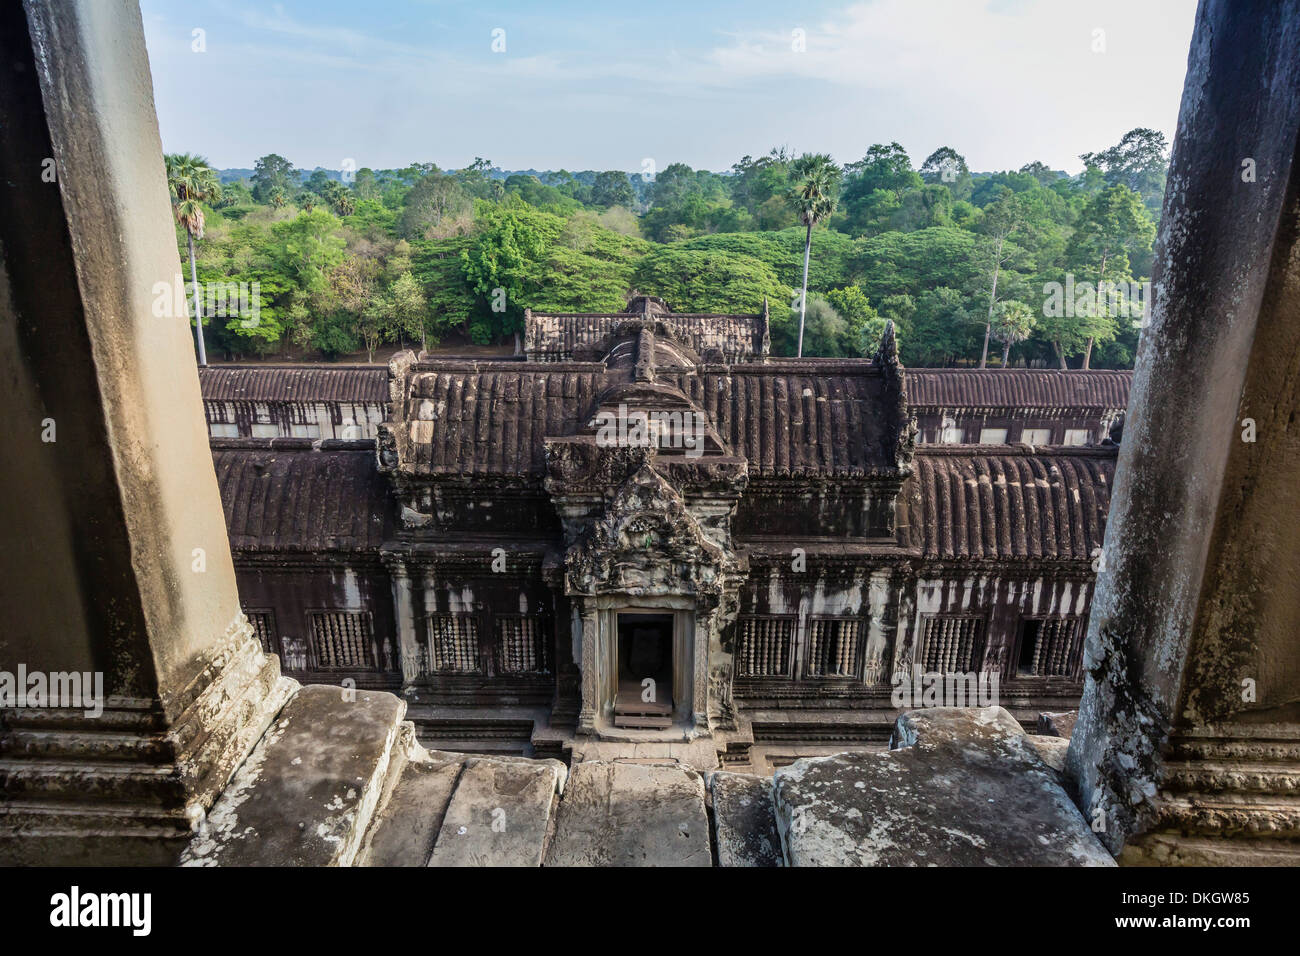 Terraza superior en Angkor Wat, Angkor, sitio del Patrimonio Mundial de la UNESCO, de la provincia de Siem Reap, Camboya, en Indochina, en el sudeste de Asia, Asia Foto de stock